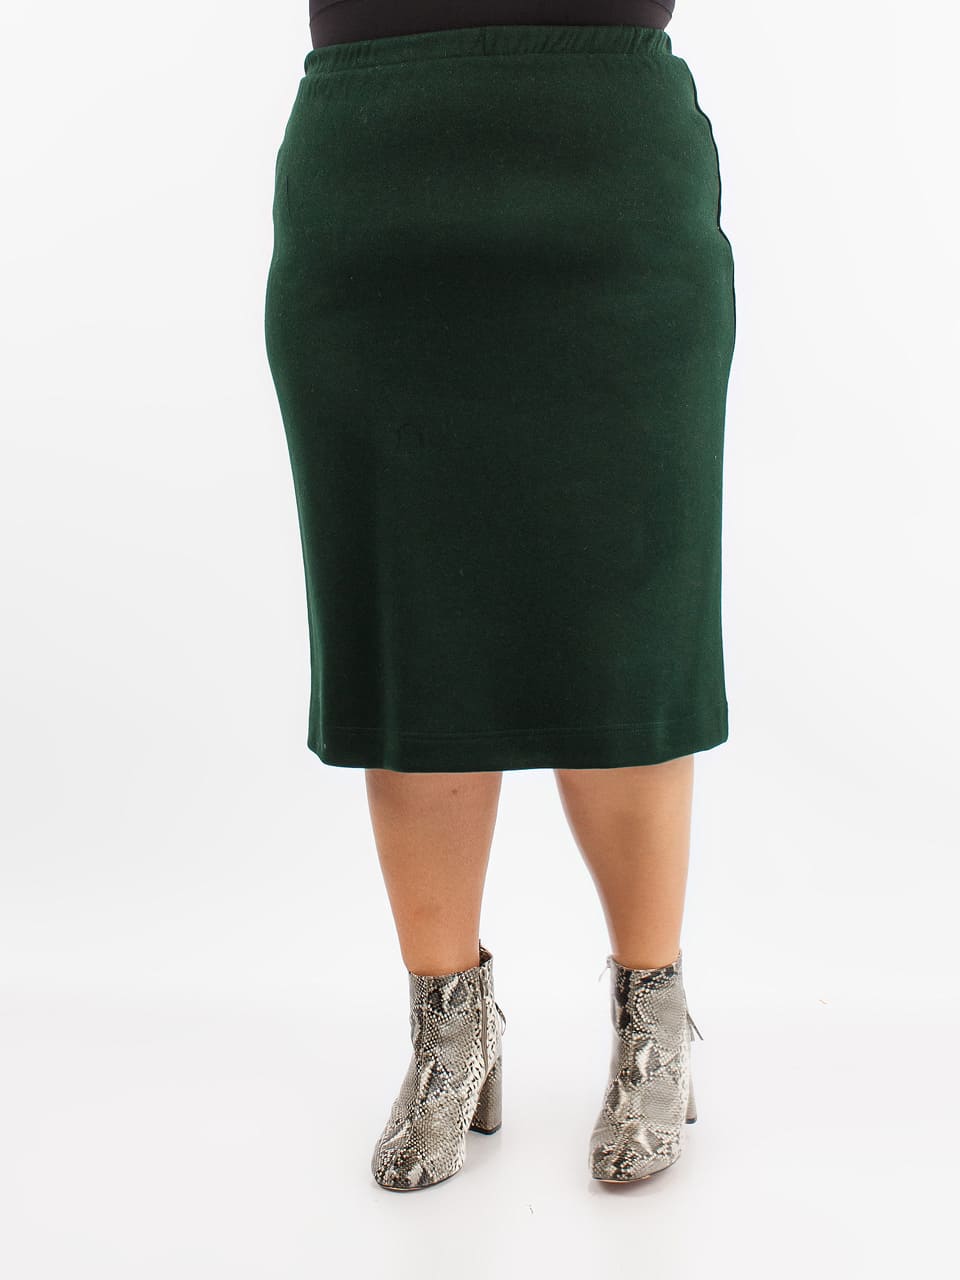 Прямая юбка со шлицей и поясом на резинке, темно-зеленая